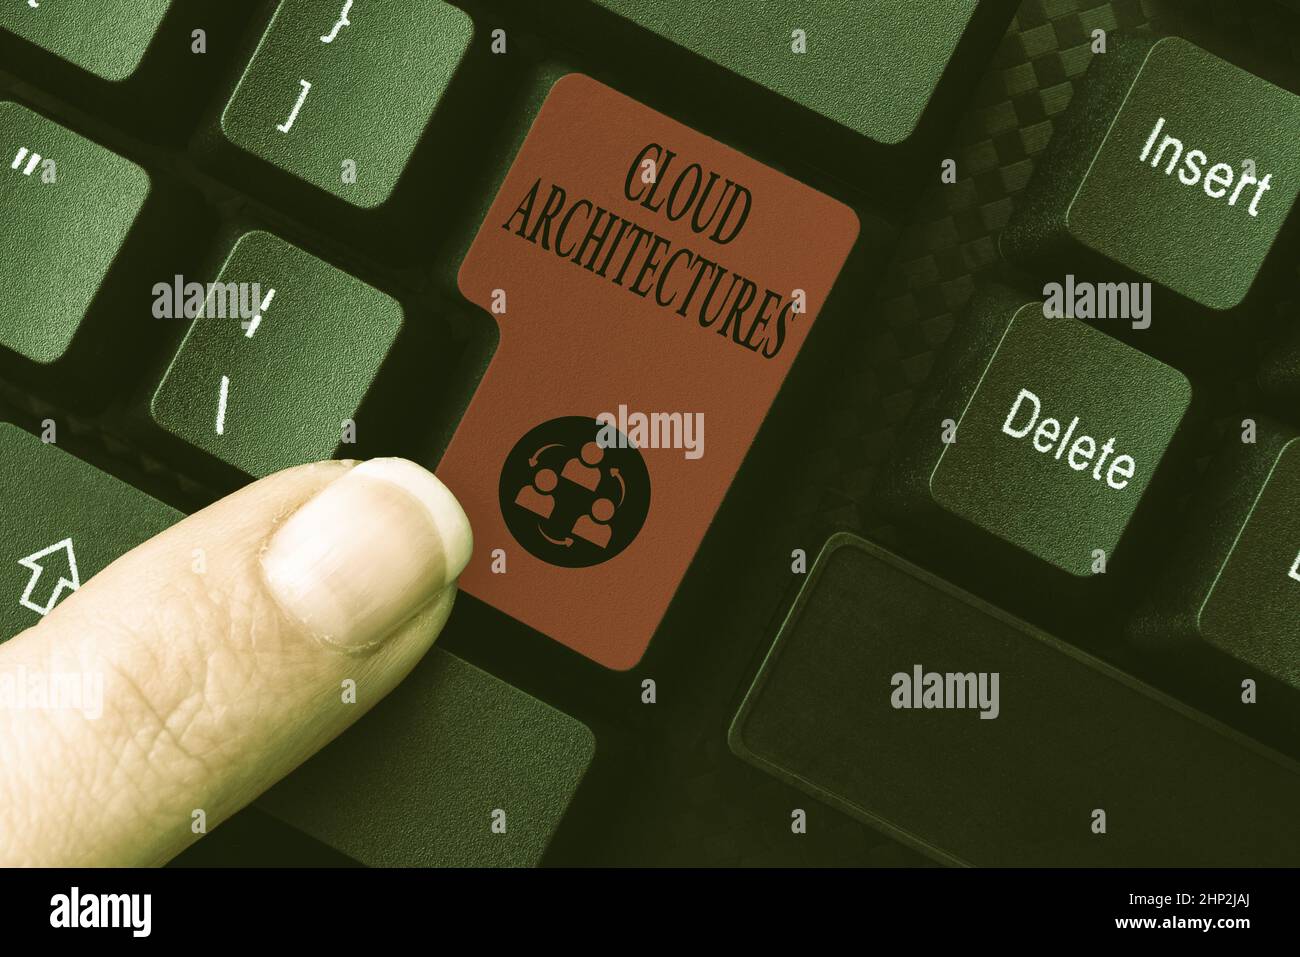 Konzeptionelle Darstellung Cloud-Architekturen, Geschäftskonzept verschiedene Engineered-Datenbanken Software-Anwendungen Zusammenfassung Antworten auf Online-Nachricht, Typi Stockfoto